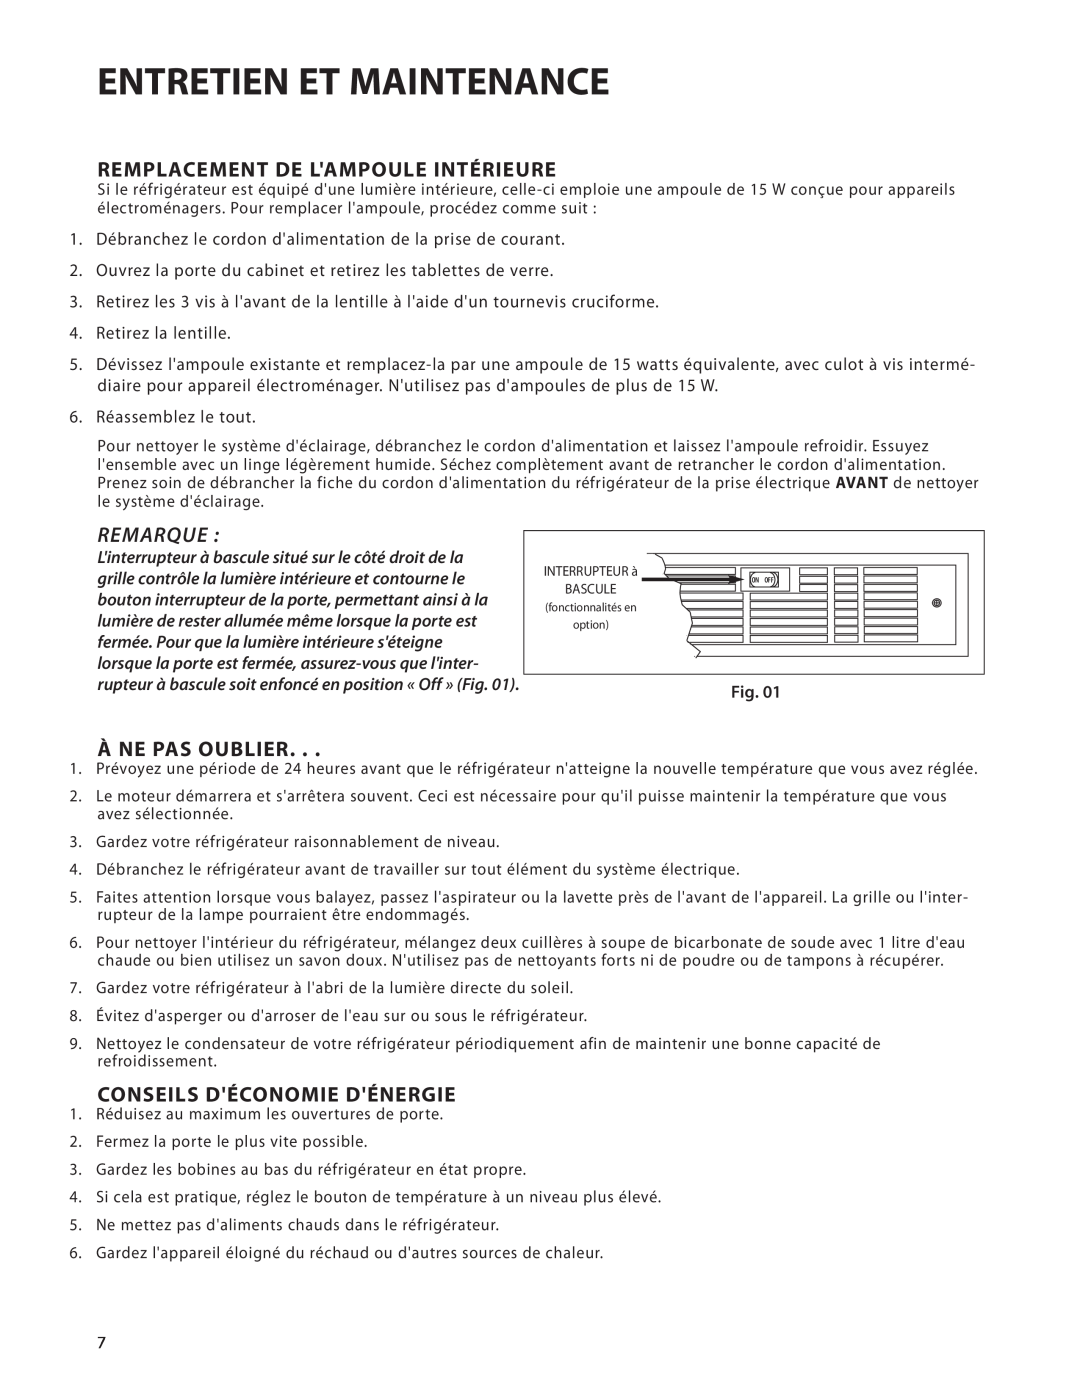 DCS UR624, UT624 manual Entretien Et Maintenance, Remplacement De Lampoule Intérieure, Remarque, À Ne Pas Oublier 